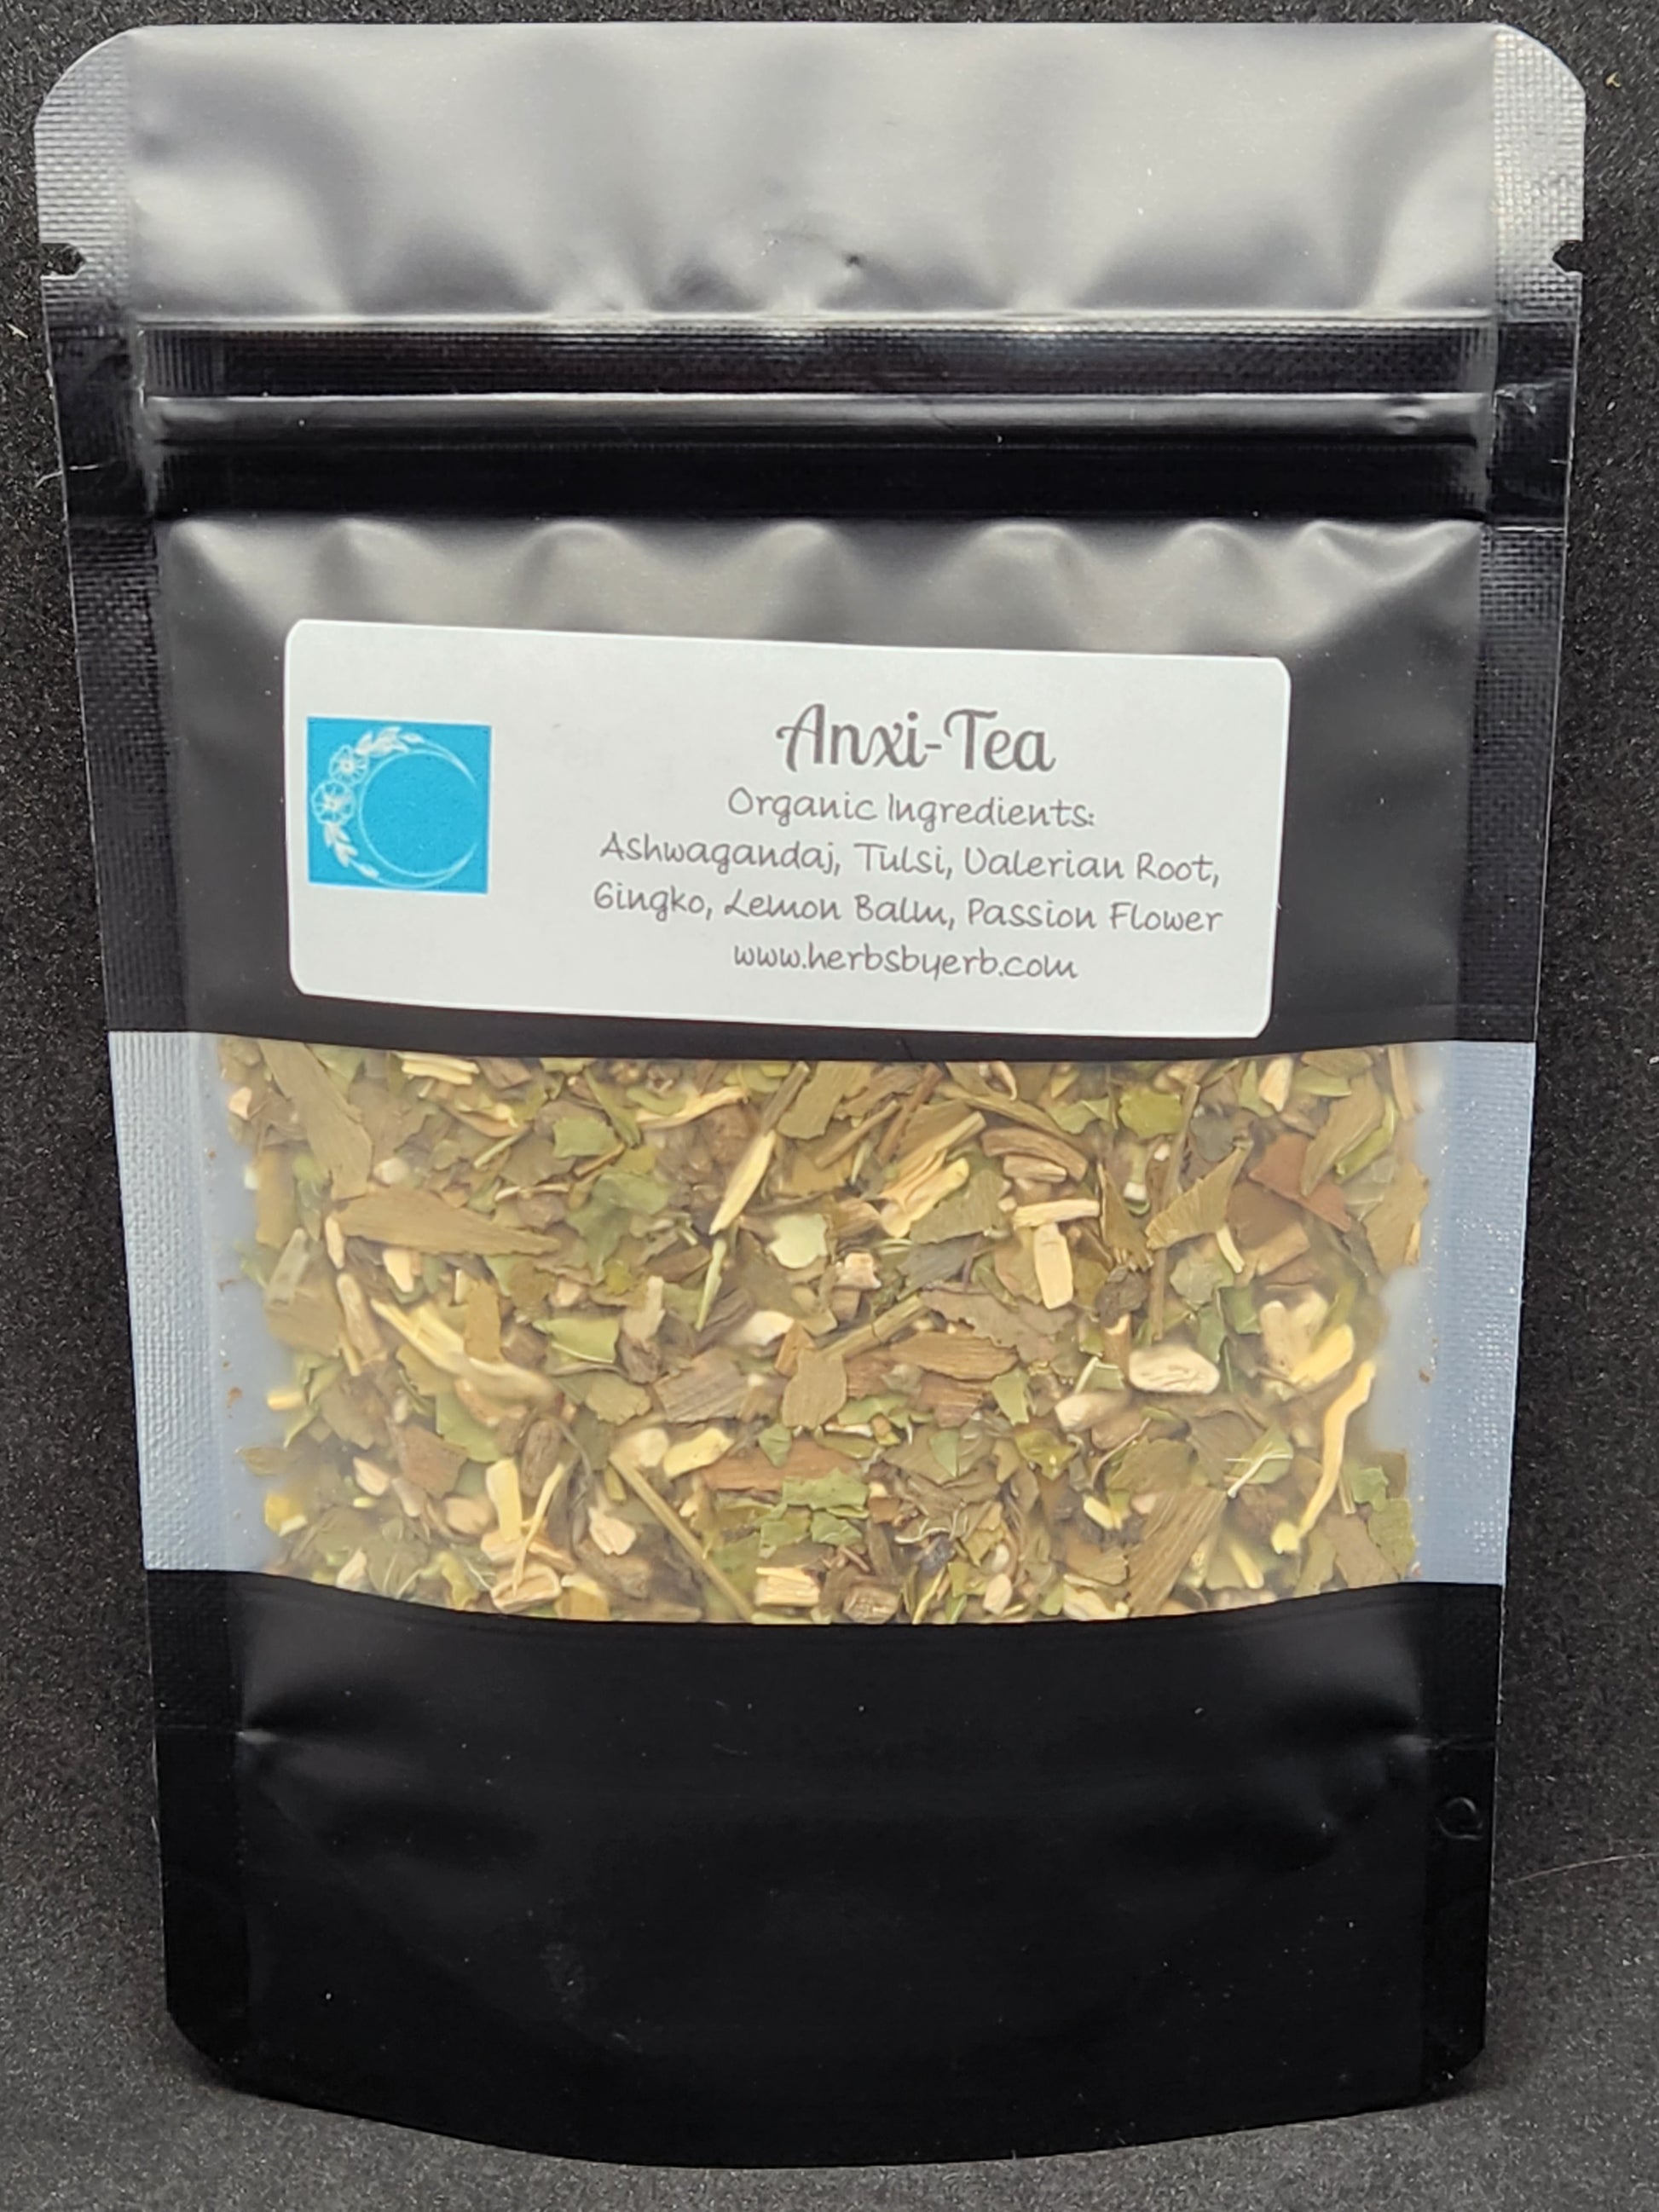 Anxi-Tea - Herbs by Erb